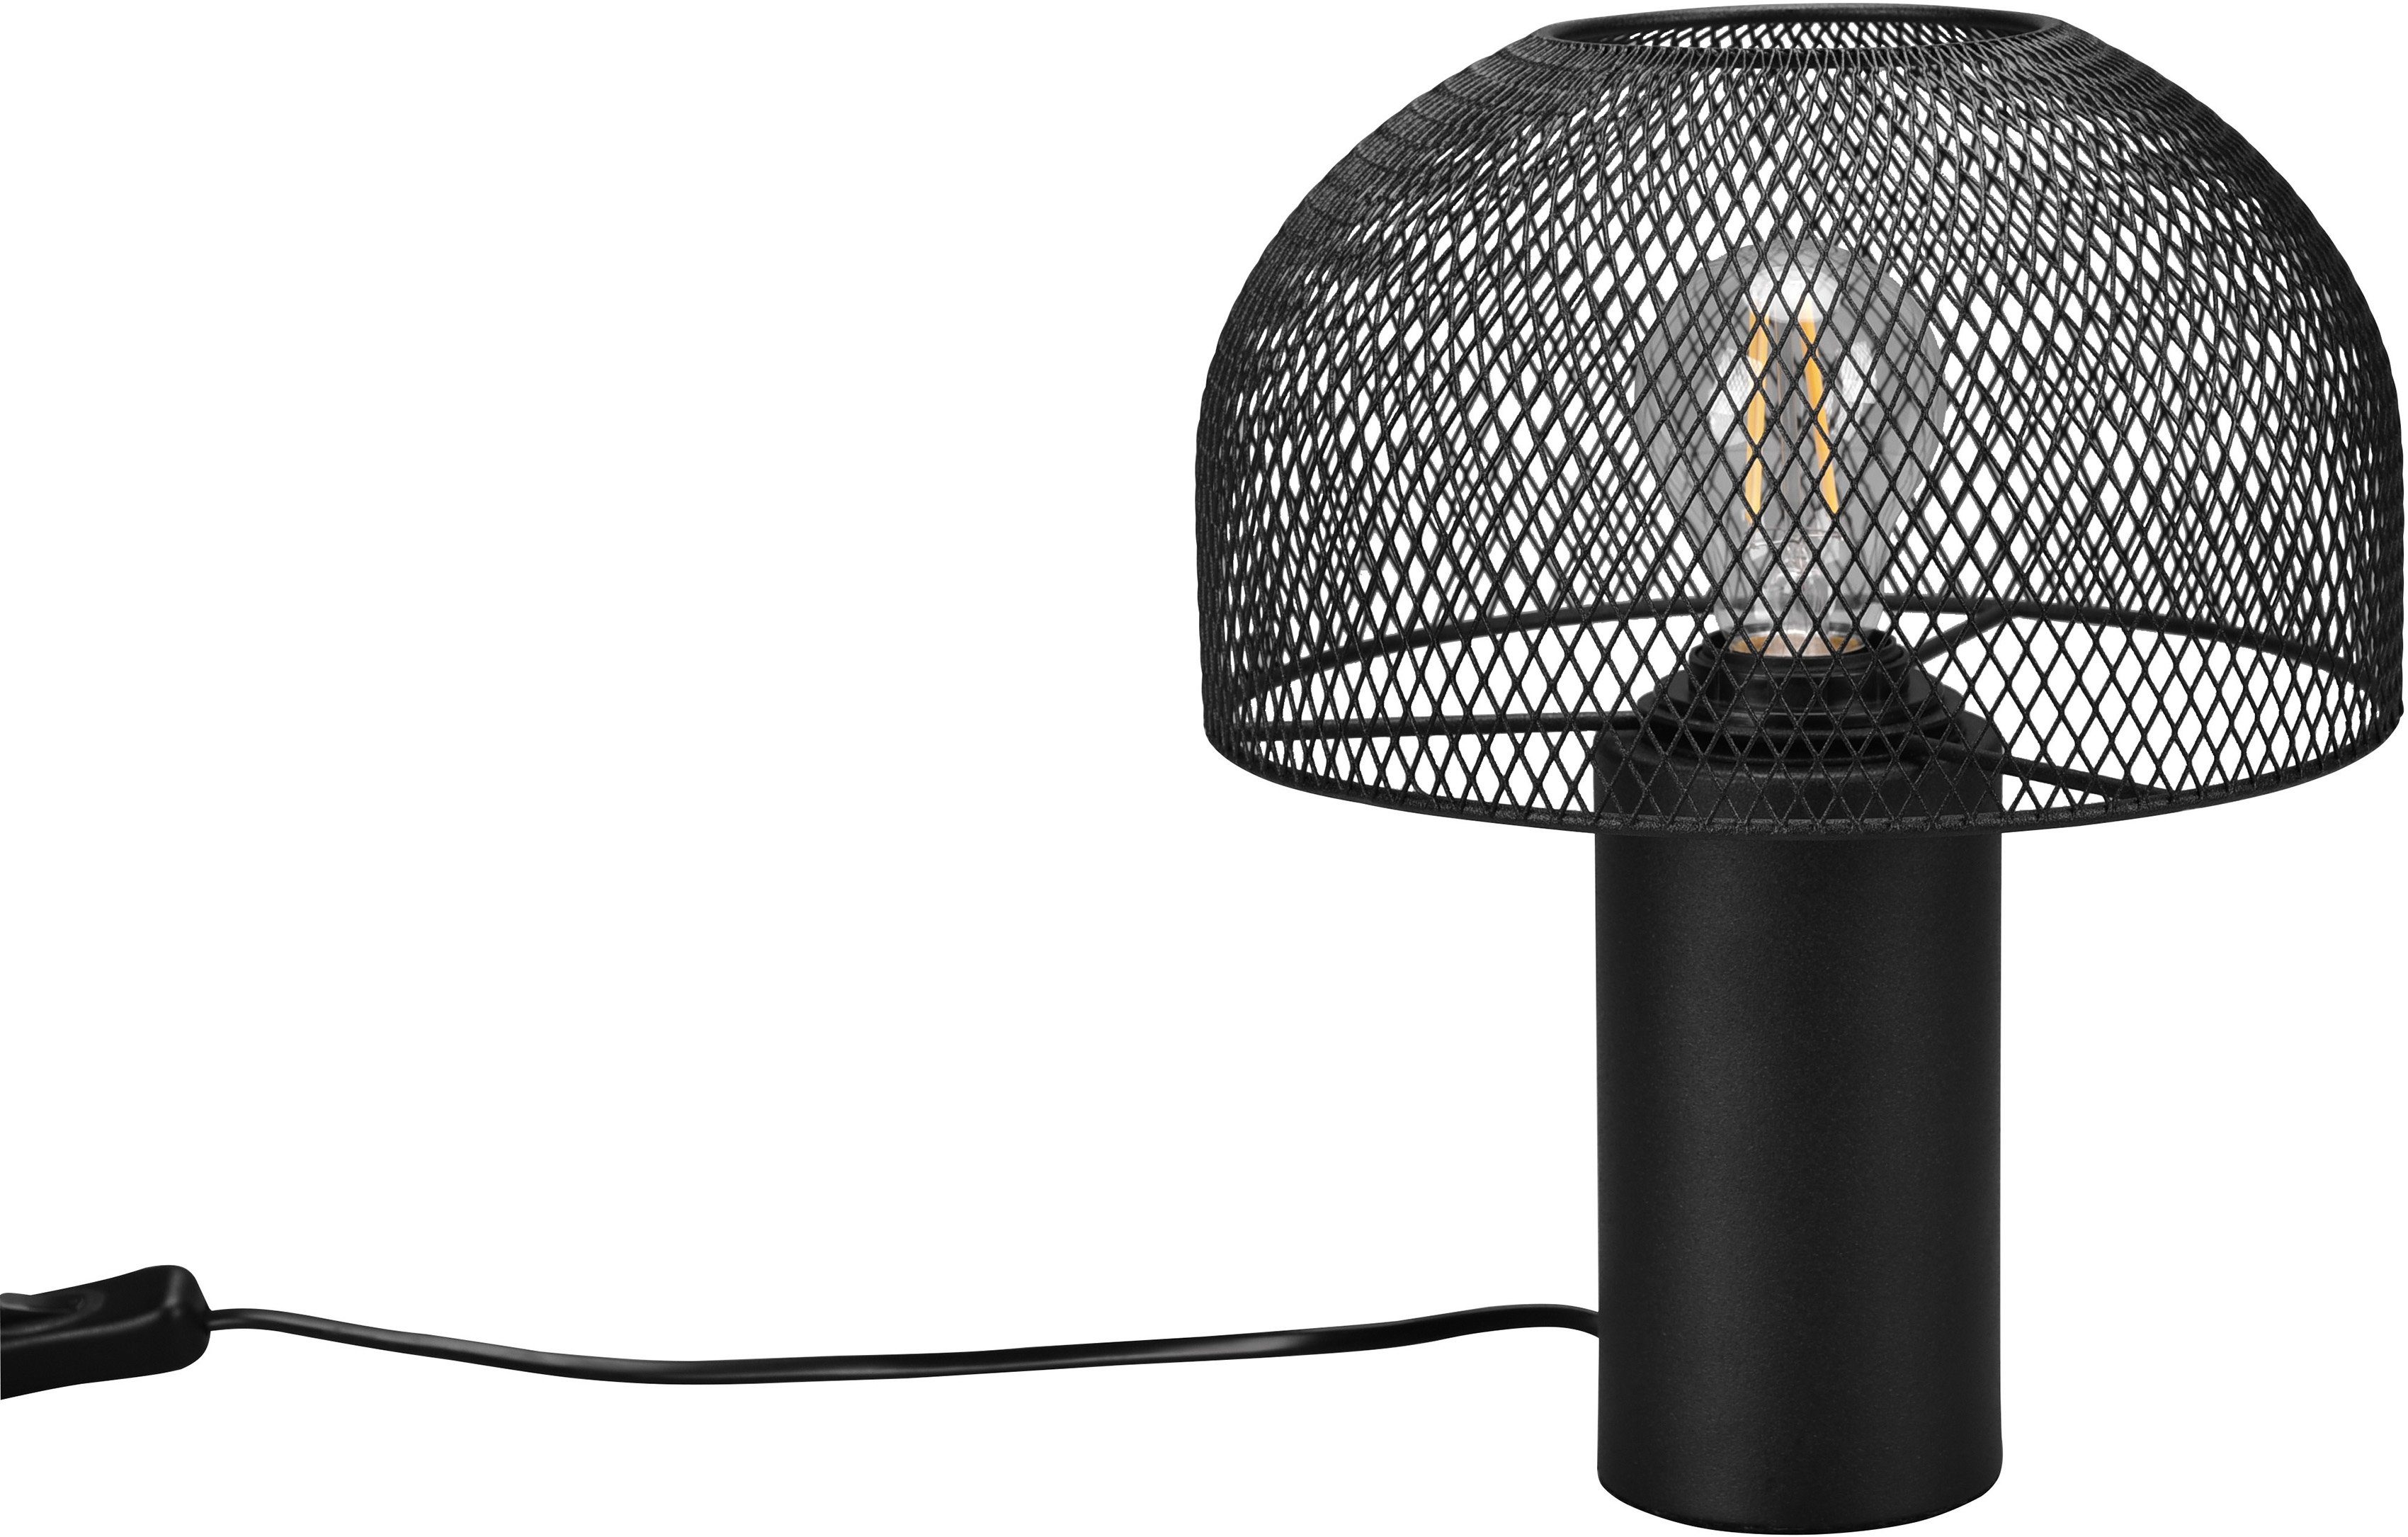 Tischlampe Gitter ohne Leuchtmittel, Schreibtischlampe Pilzlampe schwarz Elenoire, Tischleuchte Draht Schirm Leonique